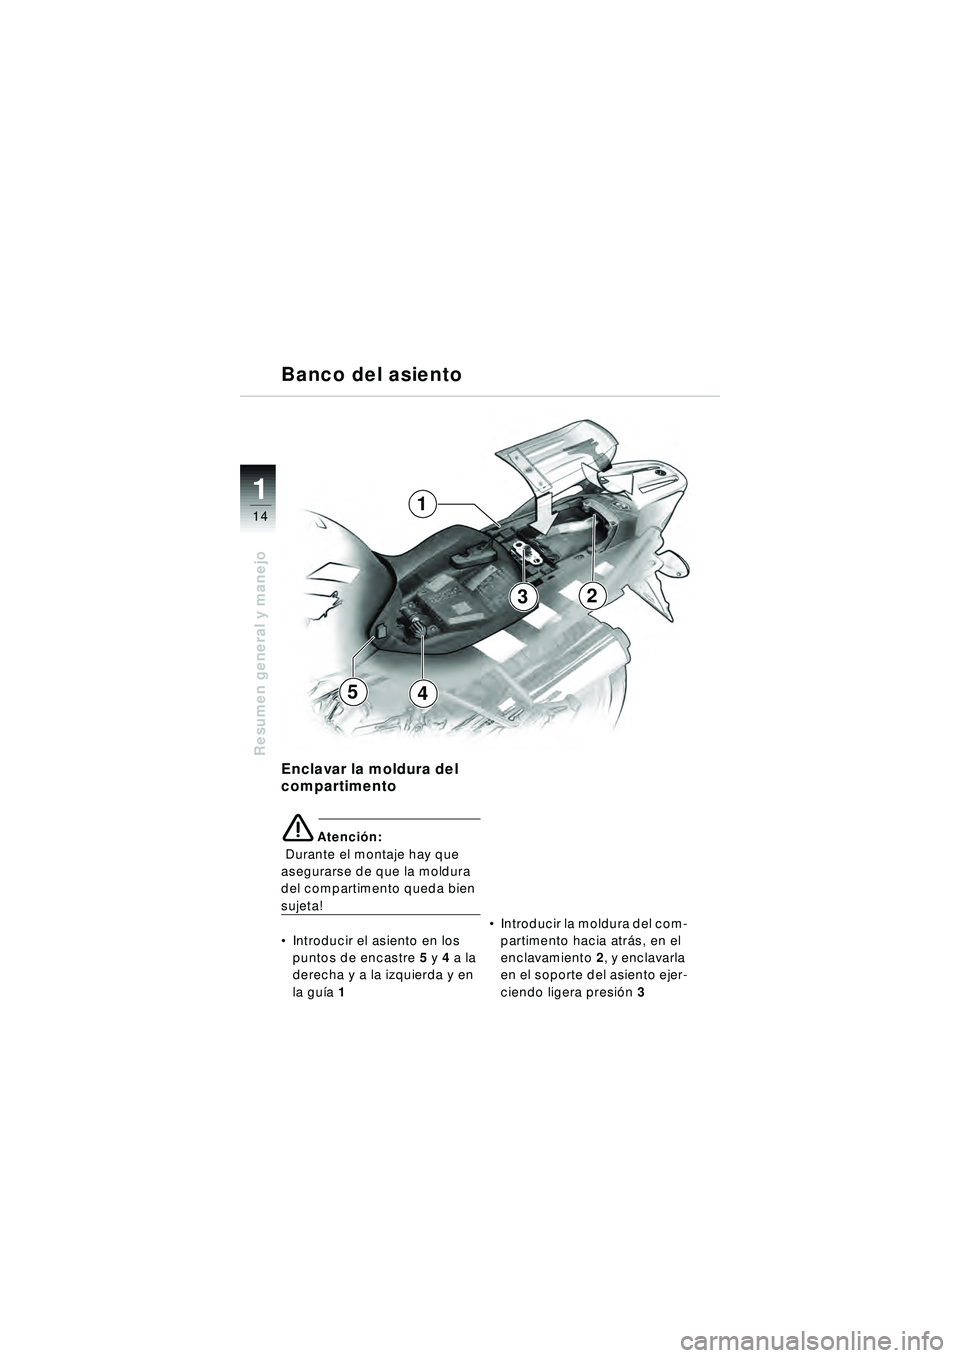 BMW MOTORRAD R 1150 R 2002  Manual de instrucciones (in Spanish) 1
Resumen general y manejo
14
54
3
1
2
Enclavar la moldura del 
compartimento
eAtención:
  Durante el montaje hay que 
asegurarse de que la moldura 
del compartimento queda bien 
sujeta!
 Introducir